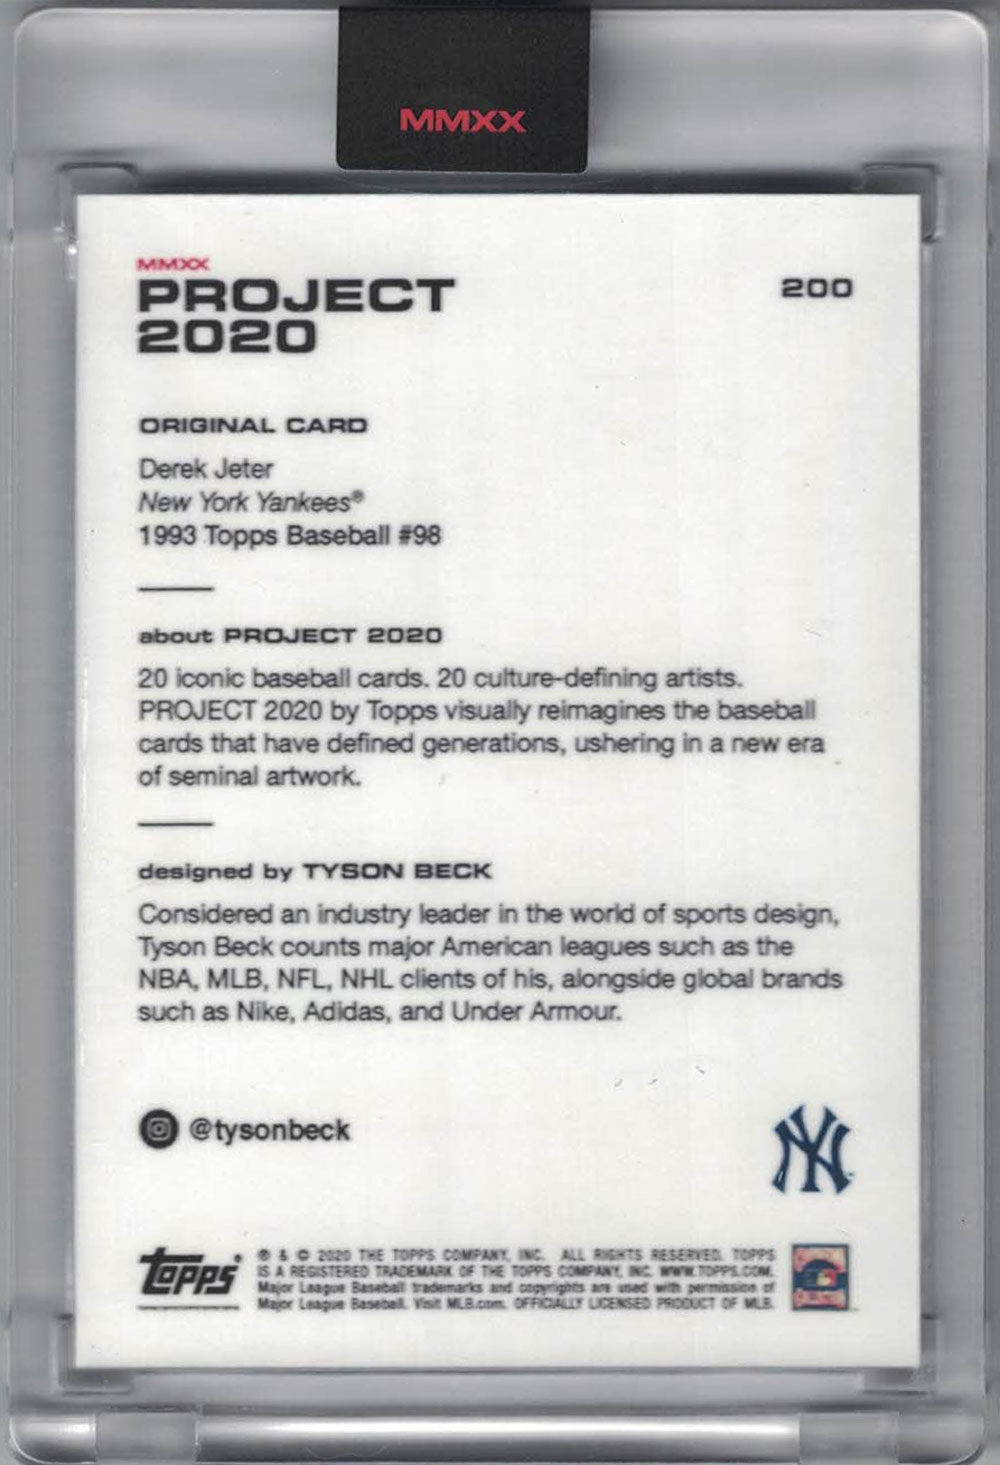 Derek Jeter New York Yankees 2020 Topps Project #200 Artist Trading Card 28570